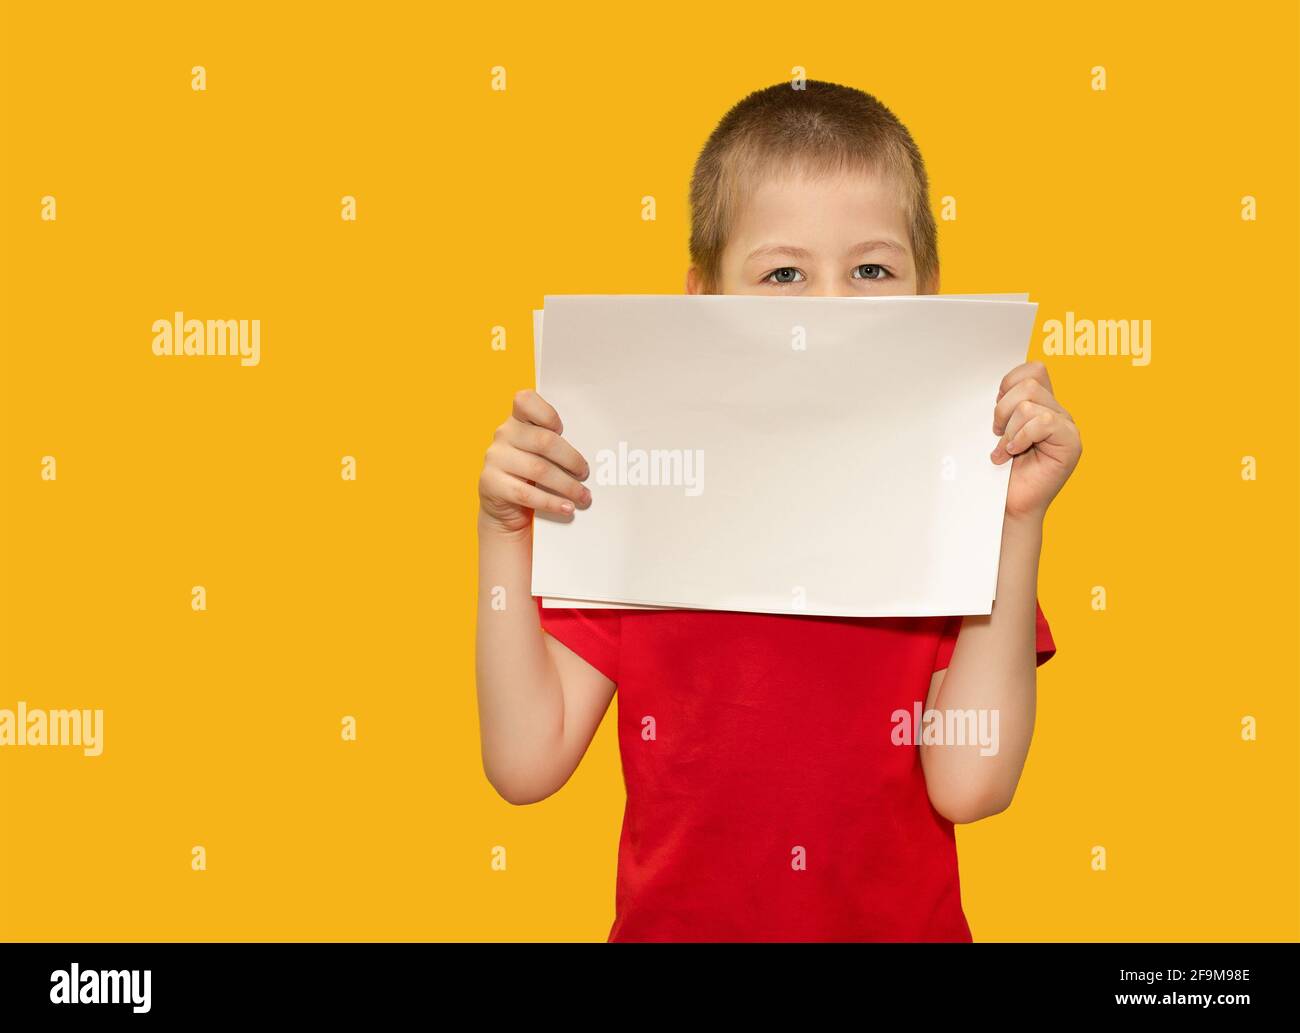 Un bambino, un ragazzo di 5 anni, in una T-shirt rossa, tiene fogli di carta su sfondo giallo. Concetto di spazio per il testo, lo spazio di copia, l'istruzione Foto Stock